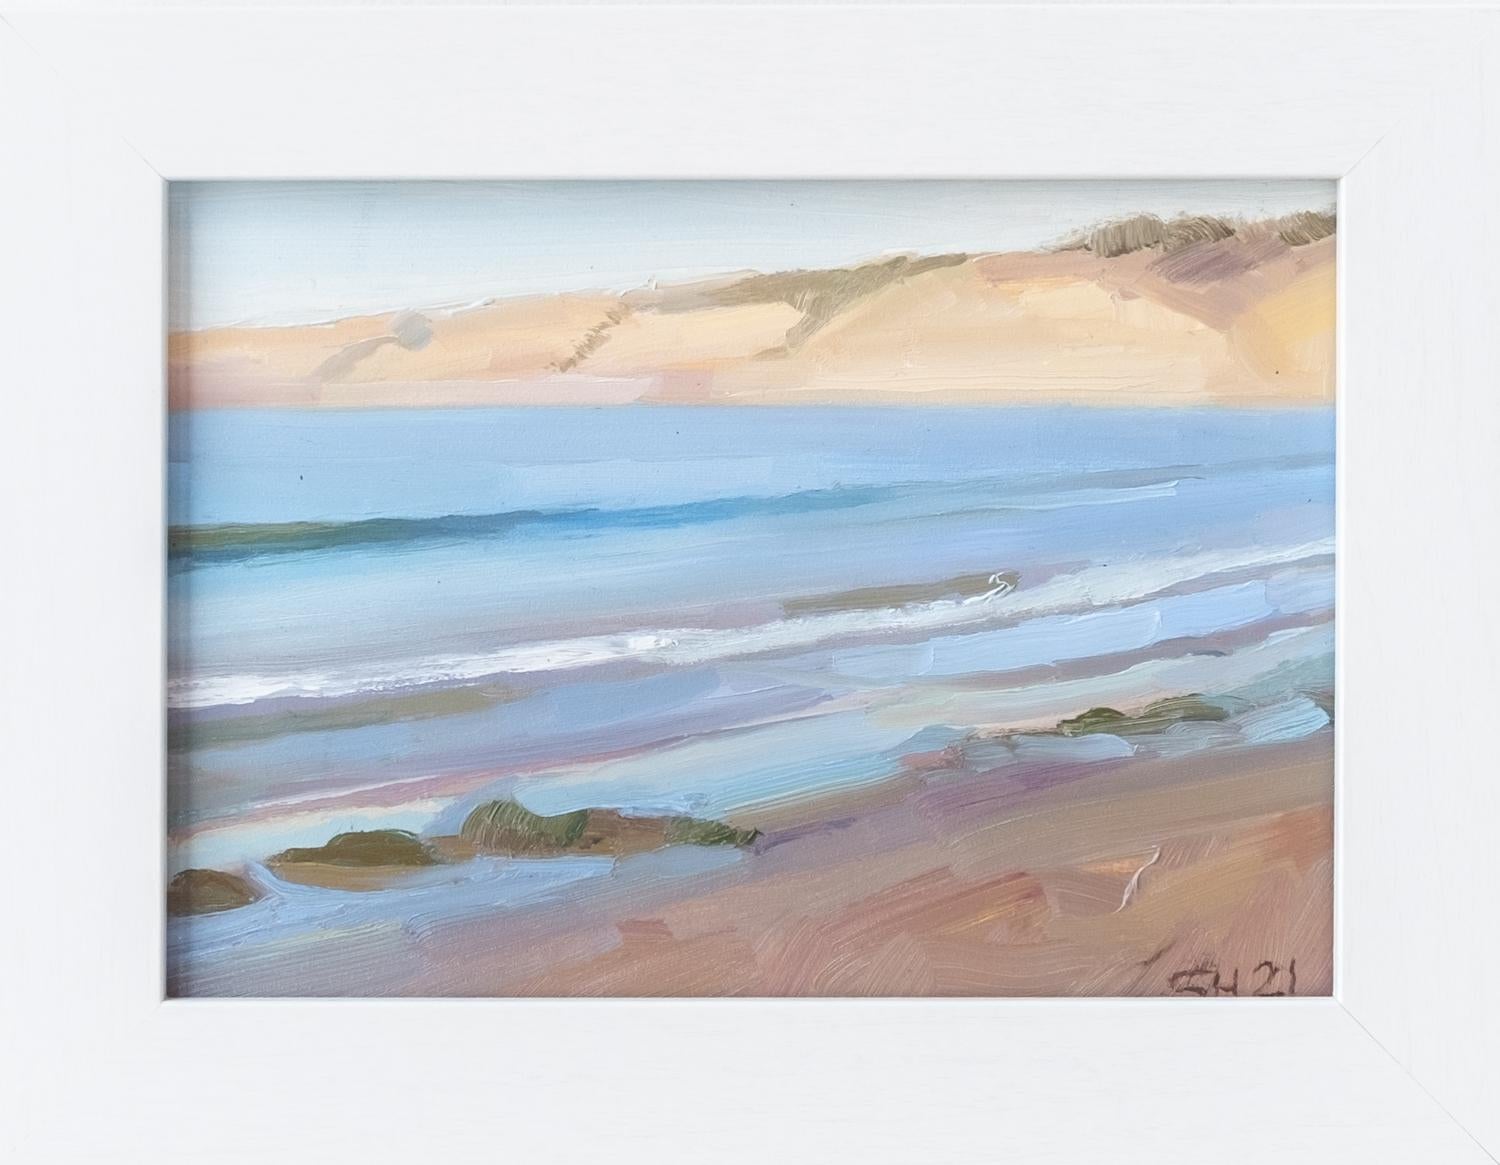 Sean Hnedak Landscape Painting - An Impressionist Oil Seascape Painting, "Light on La Jolla Shores"